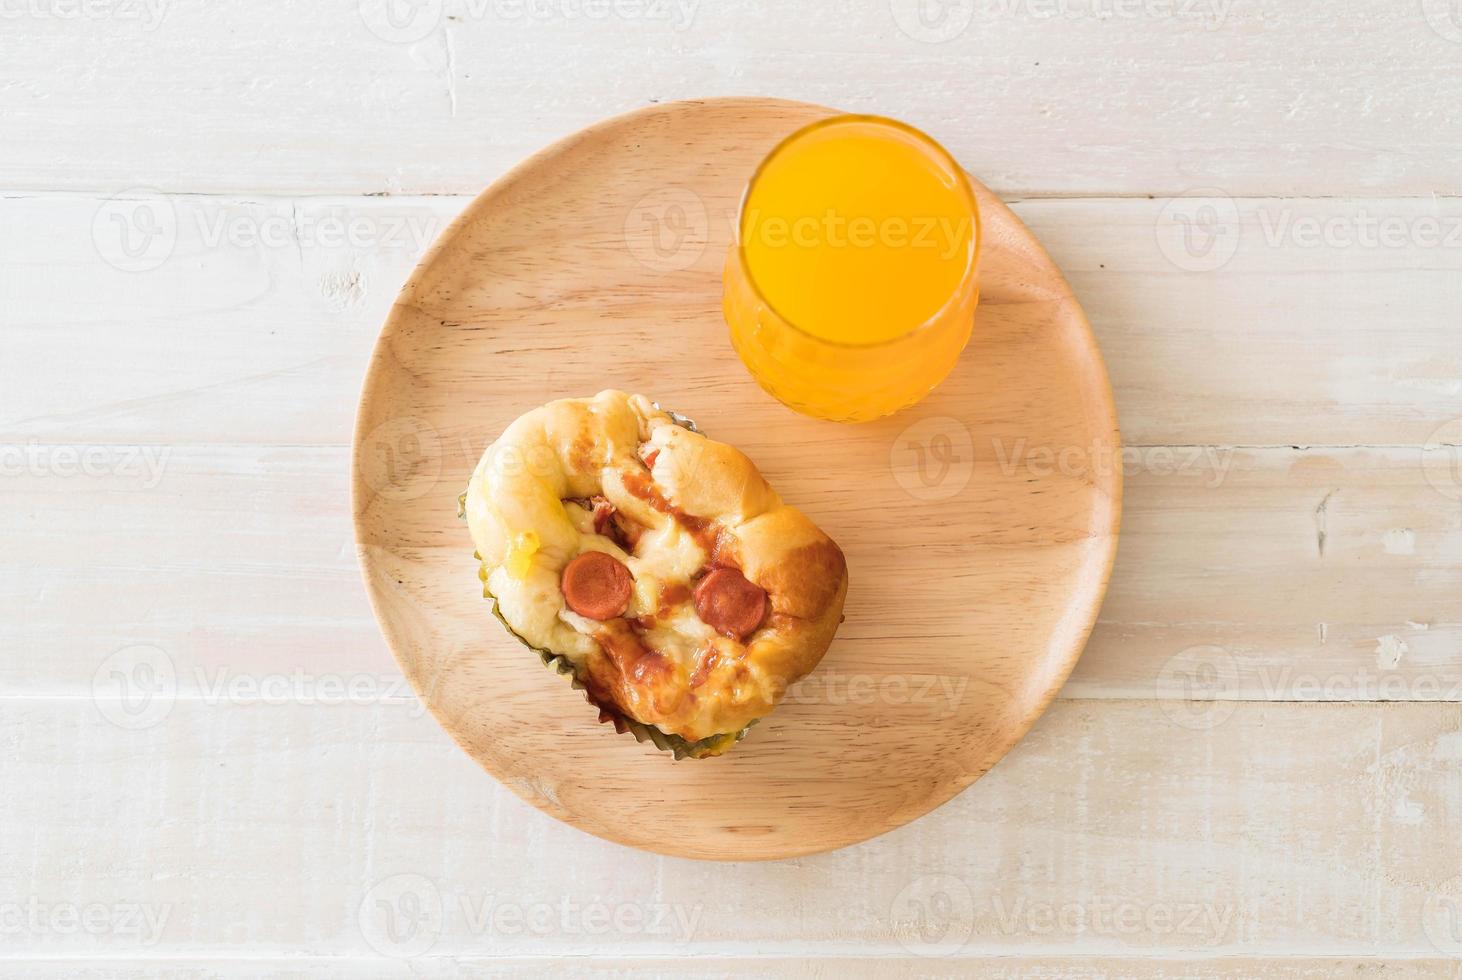 Wurst-Mayonnaise-Brot mit Orangensaft auf Holzplatte foto